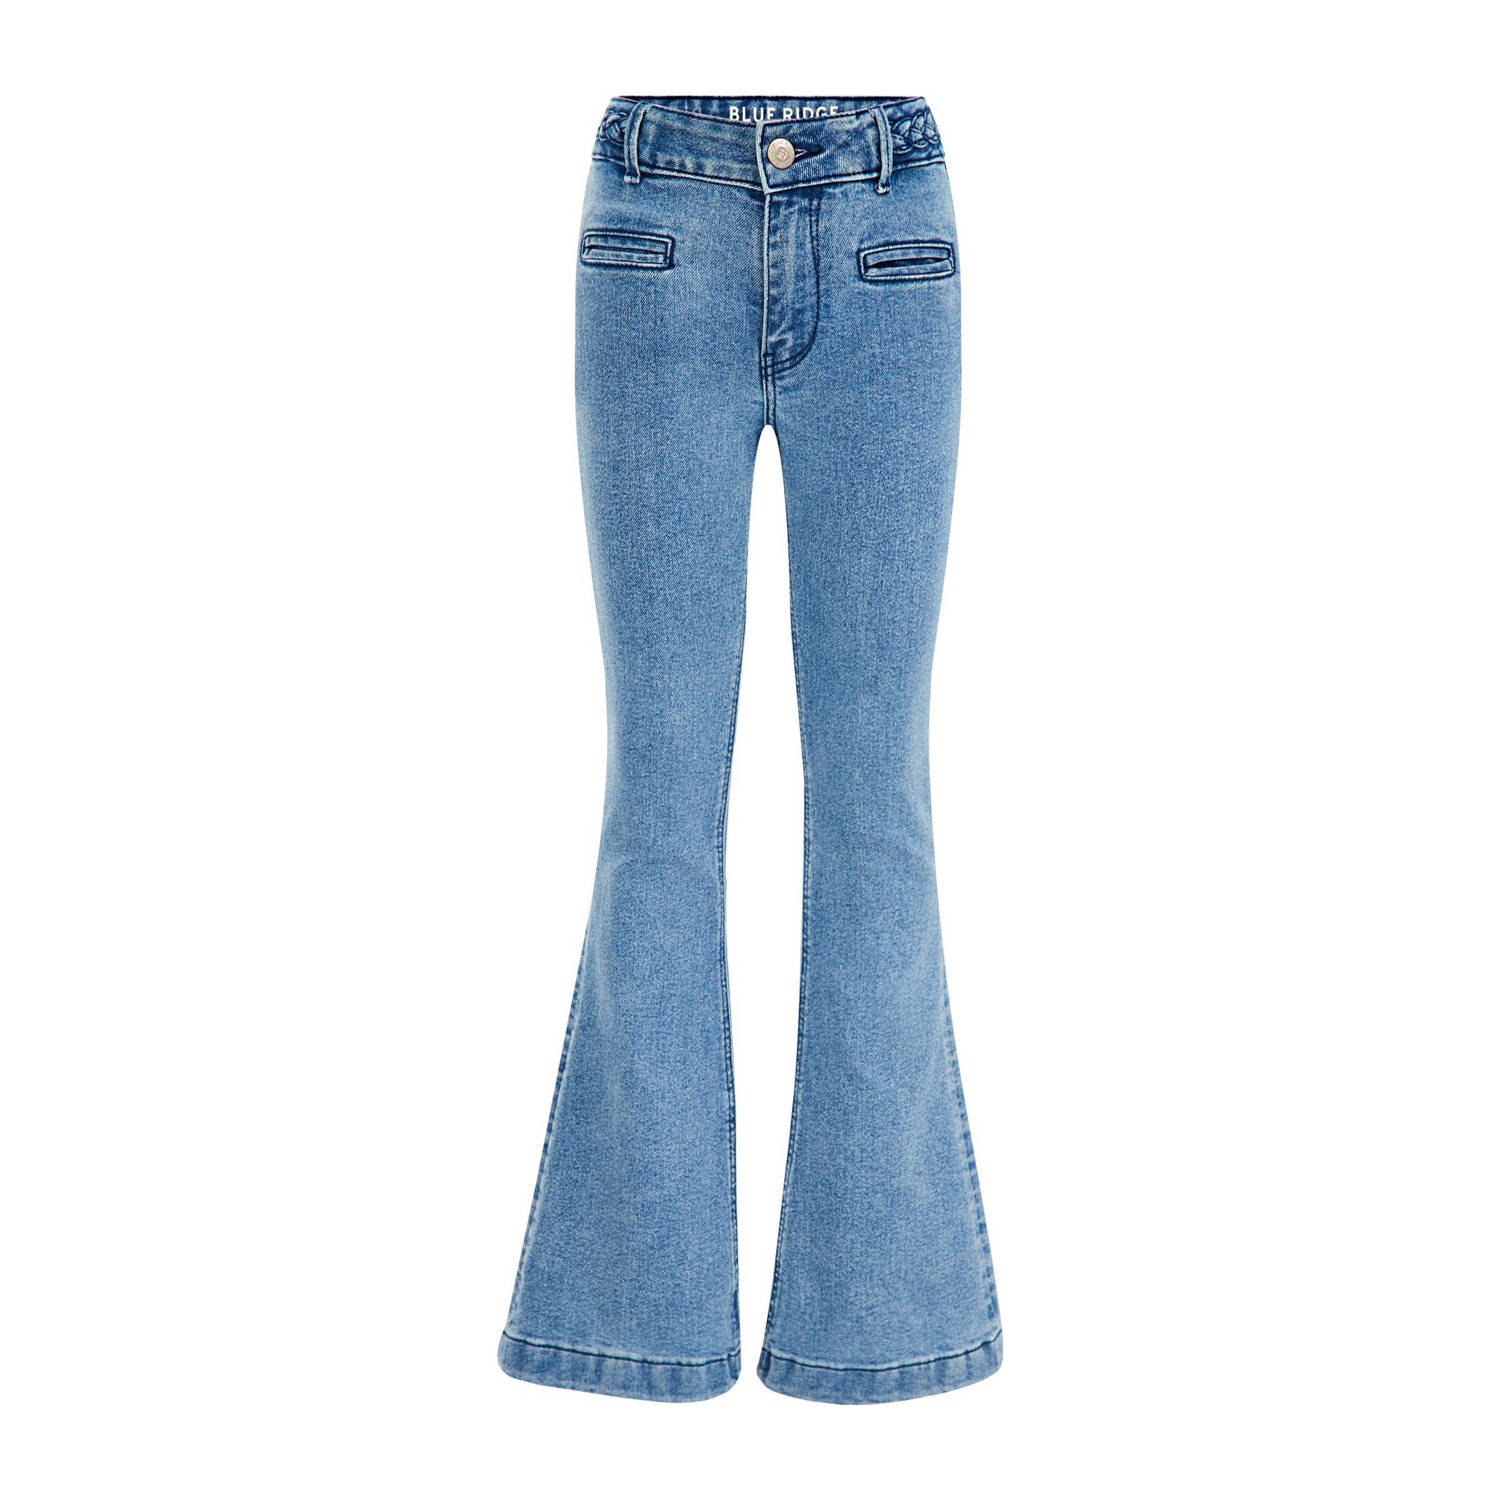 WE Fashion Blue Ridge flared jeans medium blue denim Broek Blauw Meisjes Stretchdenim 104